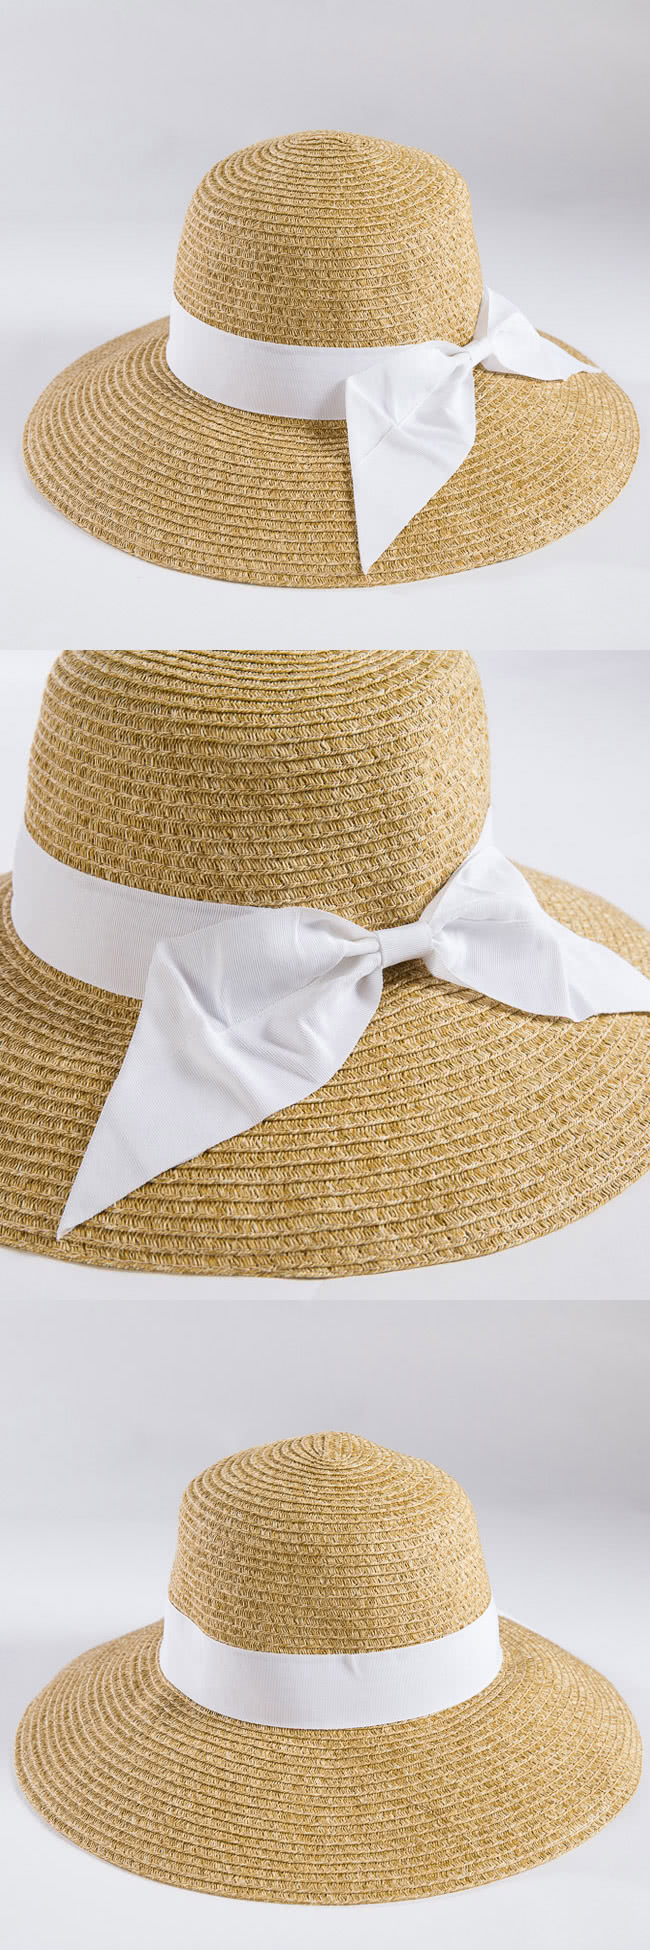 【Lorensa蘿芮】都會款配色緞帶大帽簷抗UV遮陽帽(白色草帽)